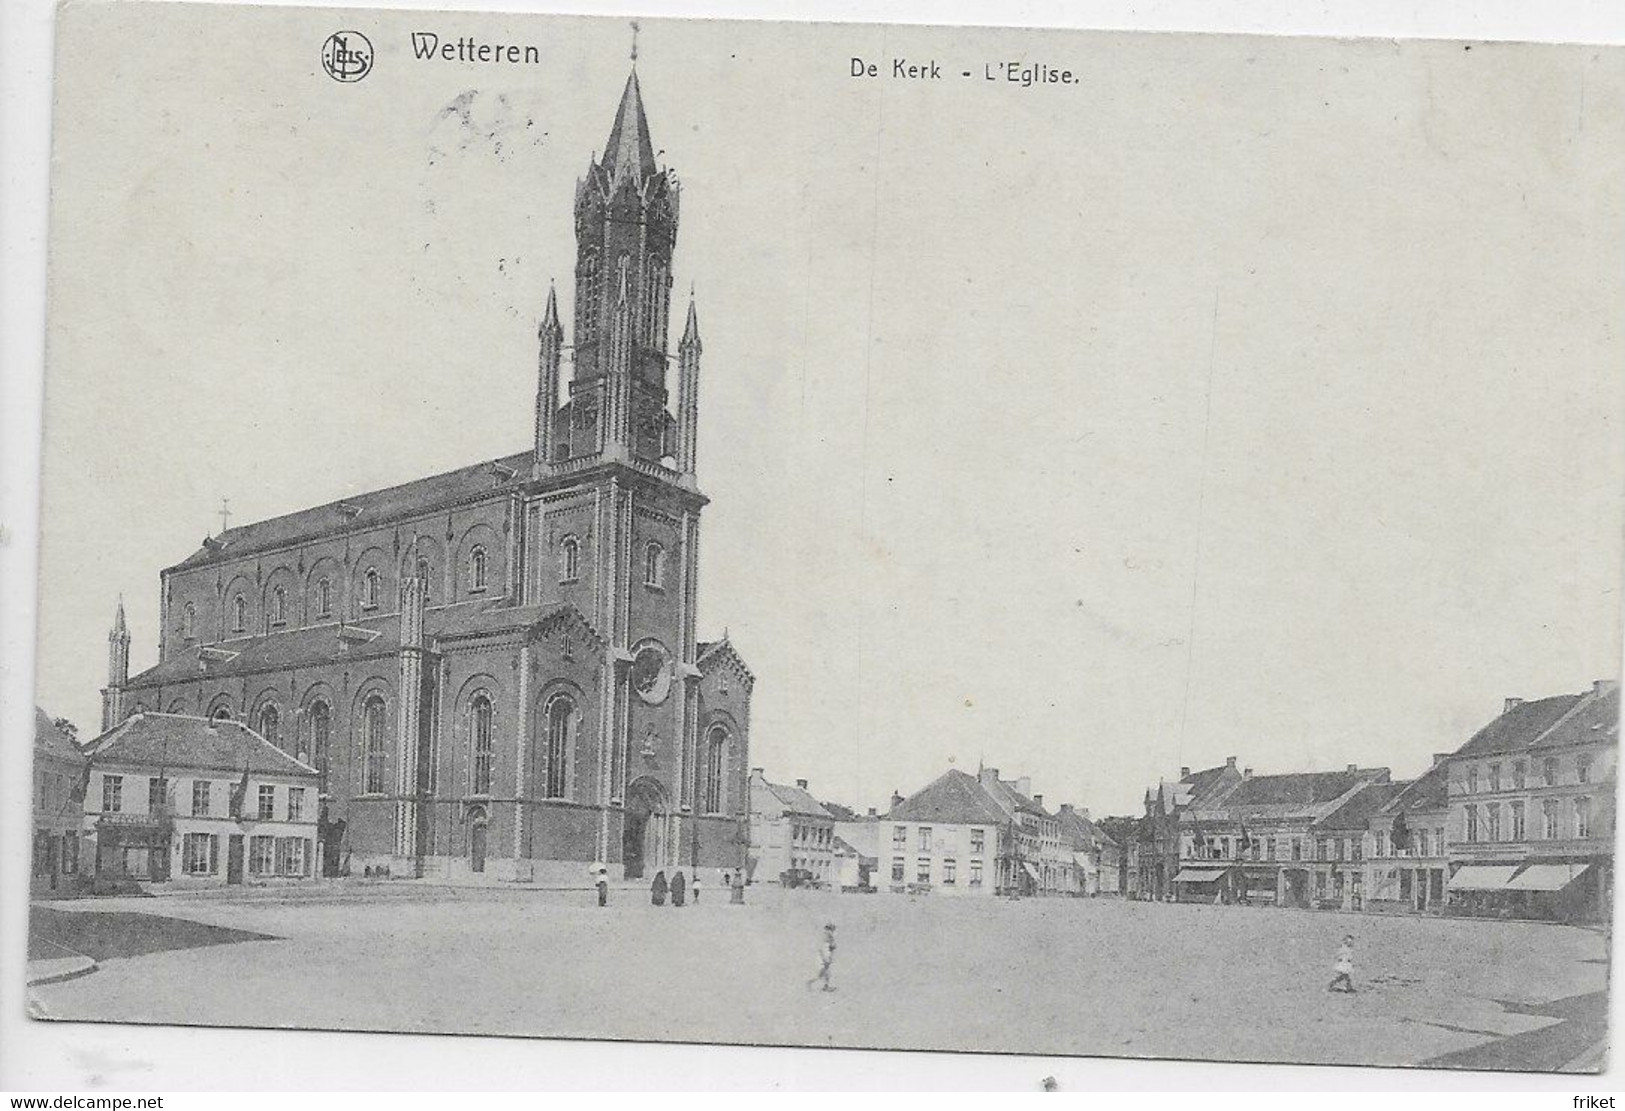 - 2965 - WETTEREN De Kerk - L'Eglise - Wetteren